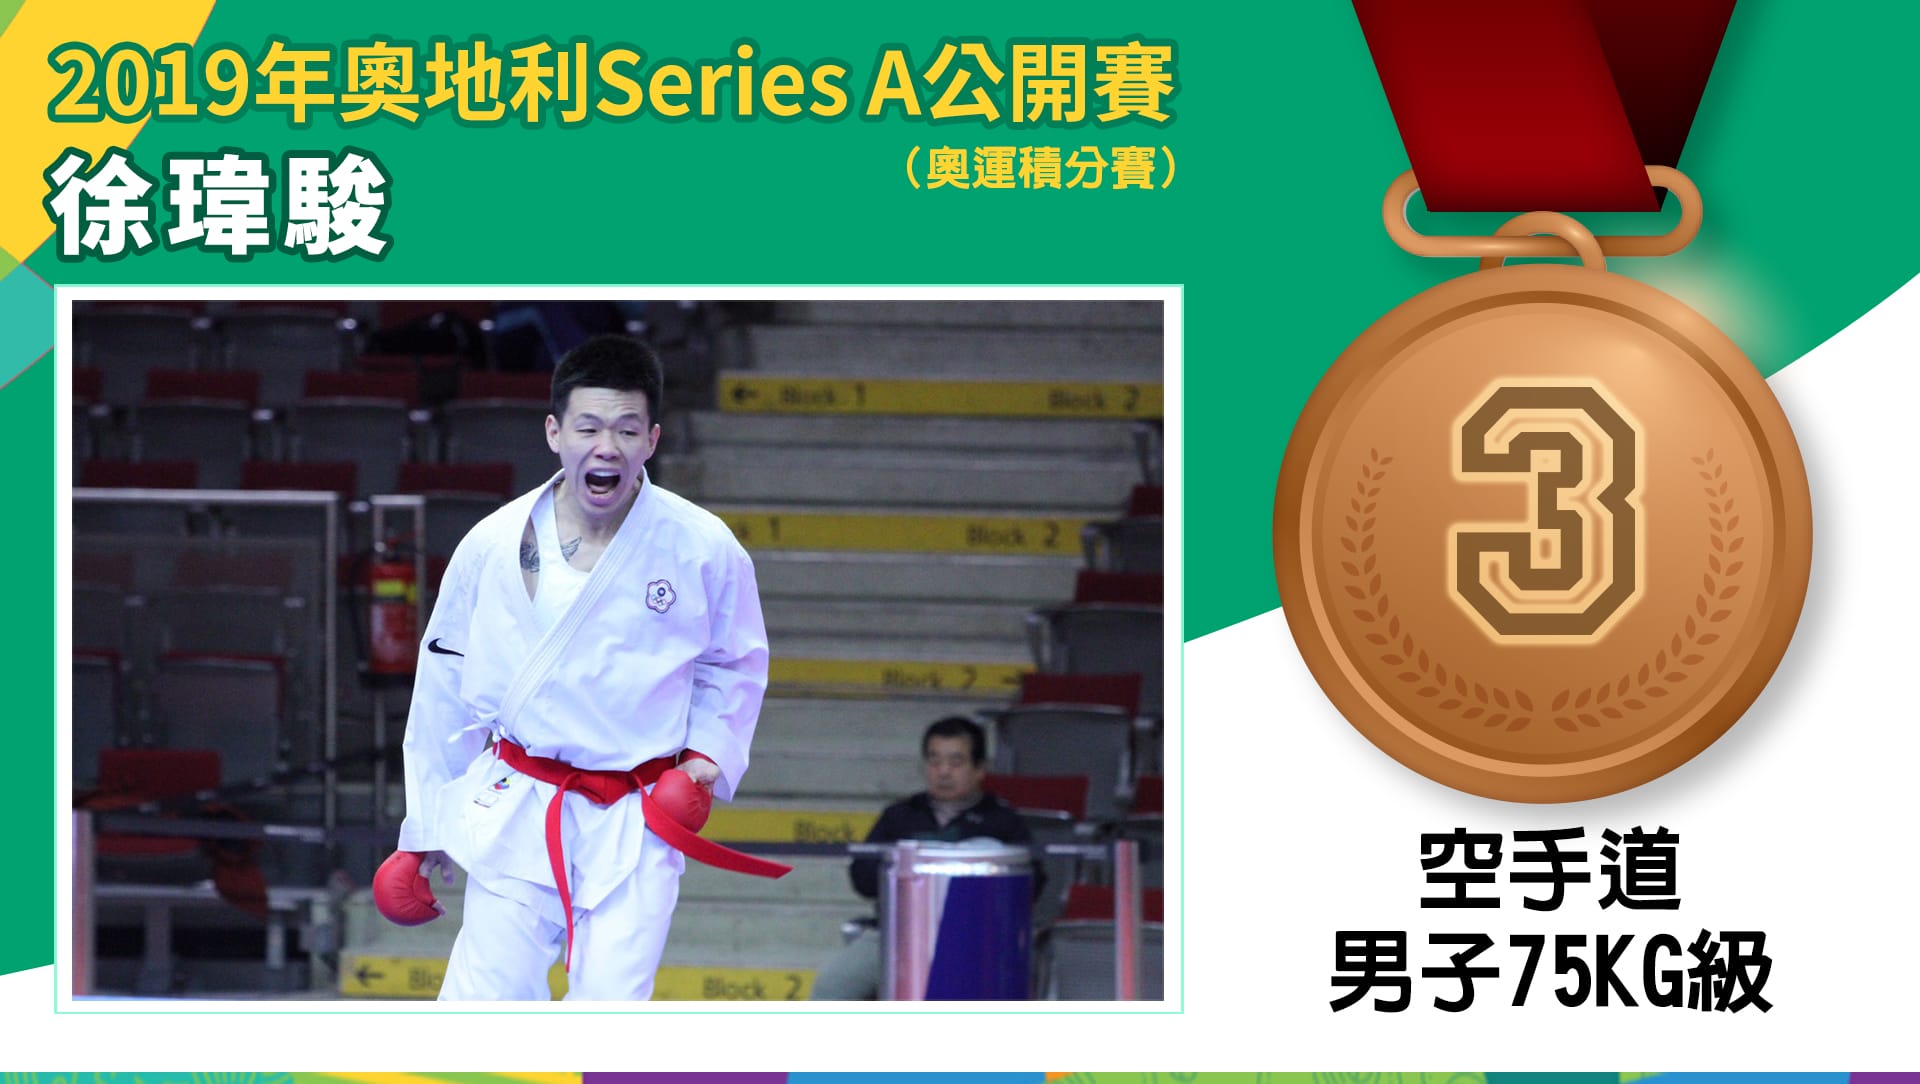 2019年奧地利Series A 空手道公開賽 徐瑋駿 - 銅牌 ( 男子-75kg級)